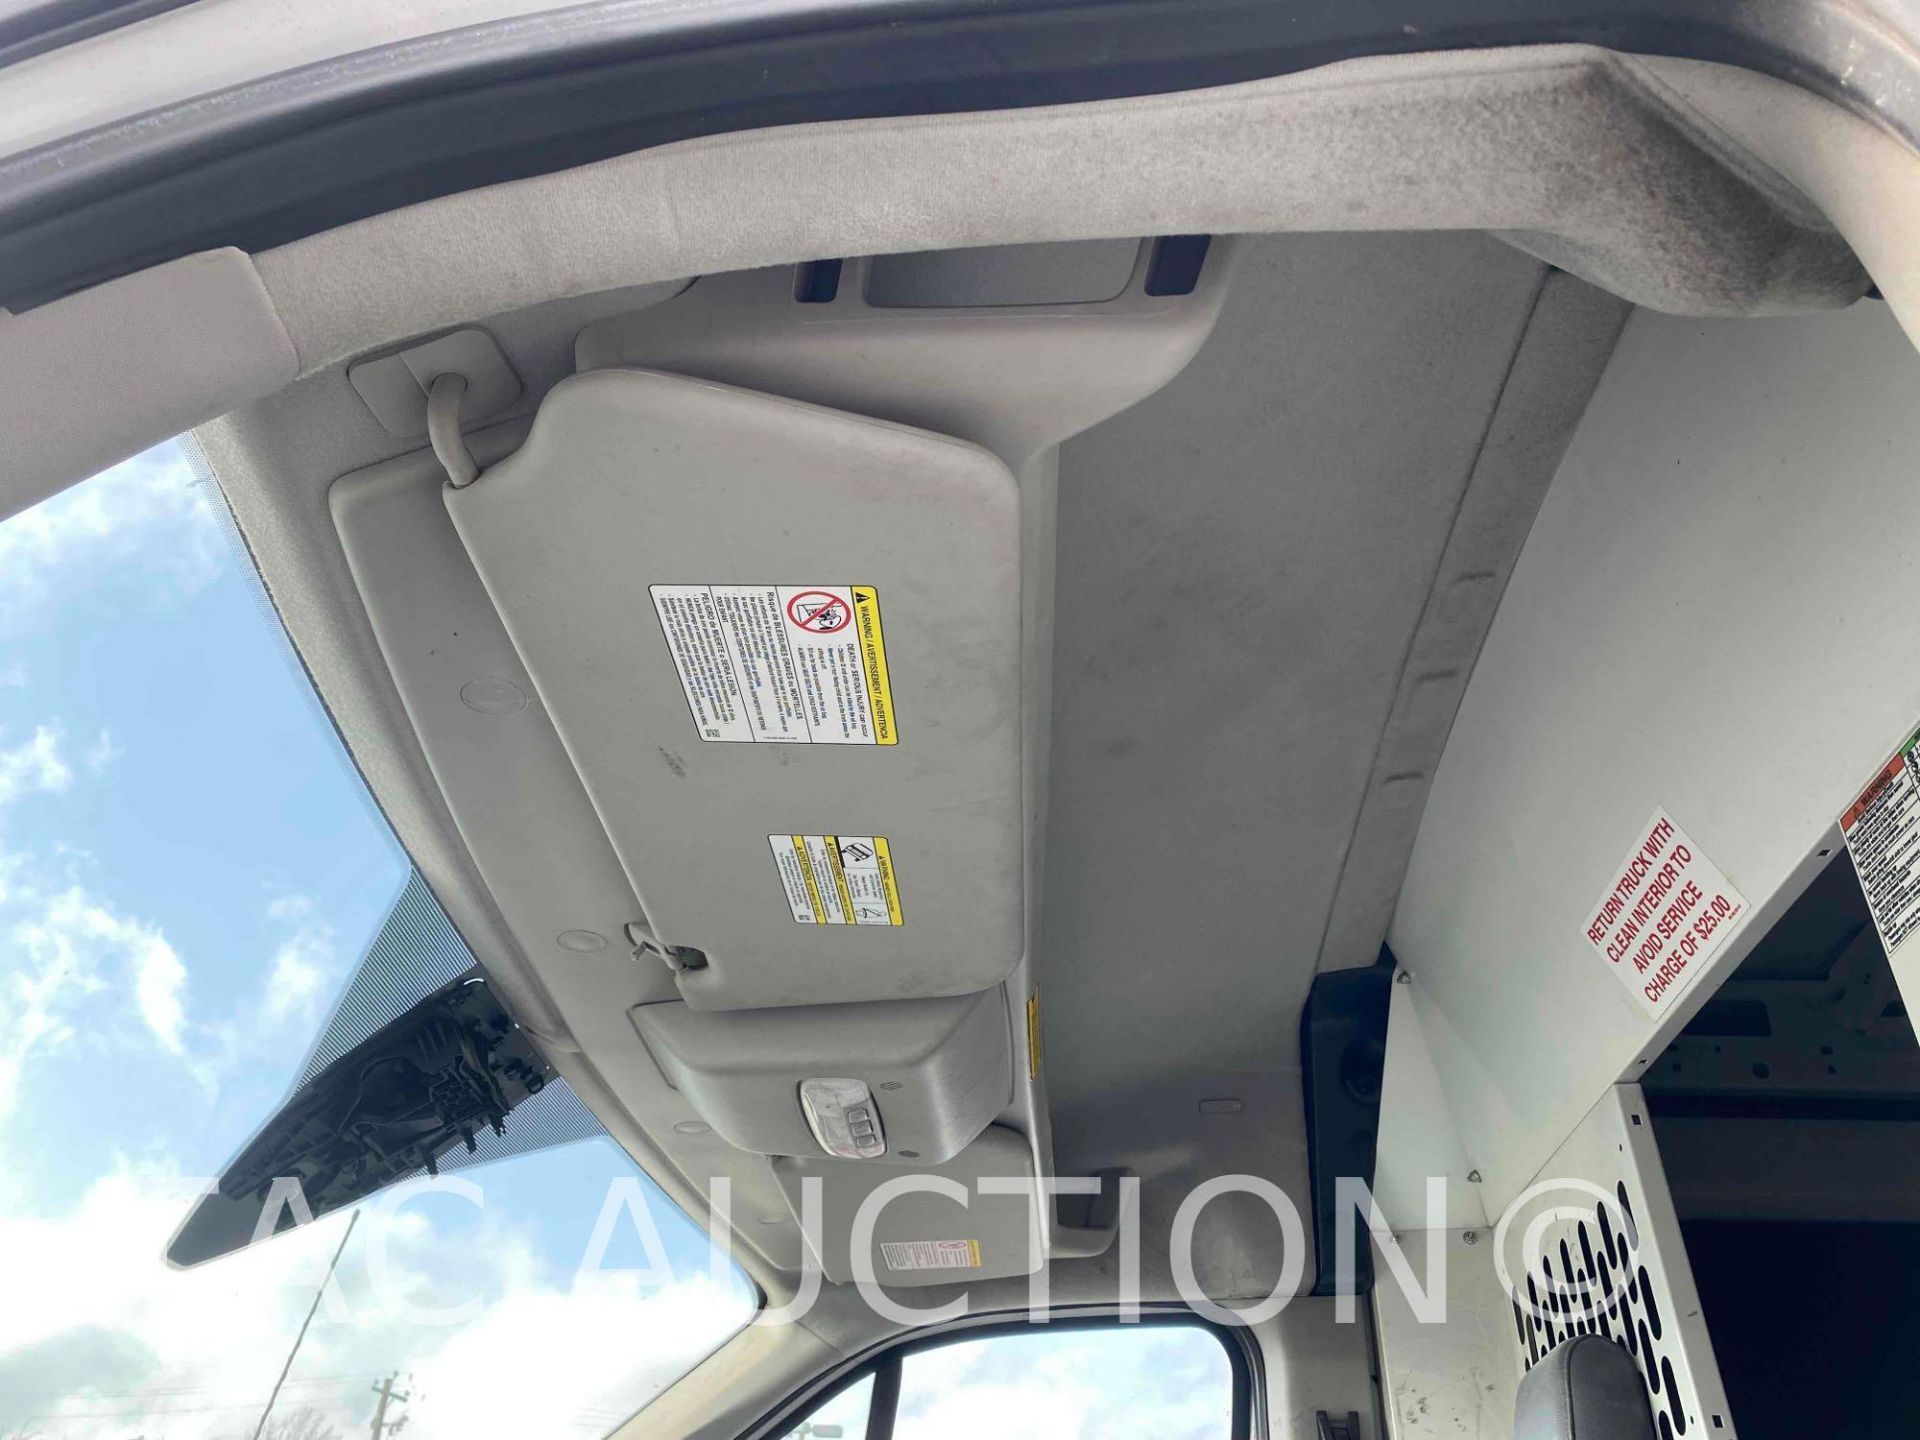 2018 Ford Transit 150 Cargo Van - Image 31 of 47